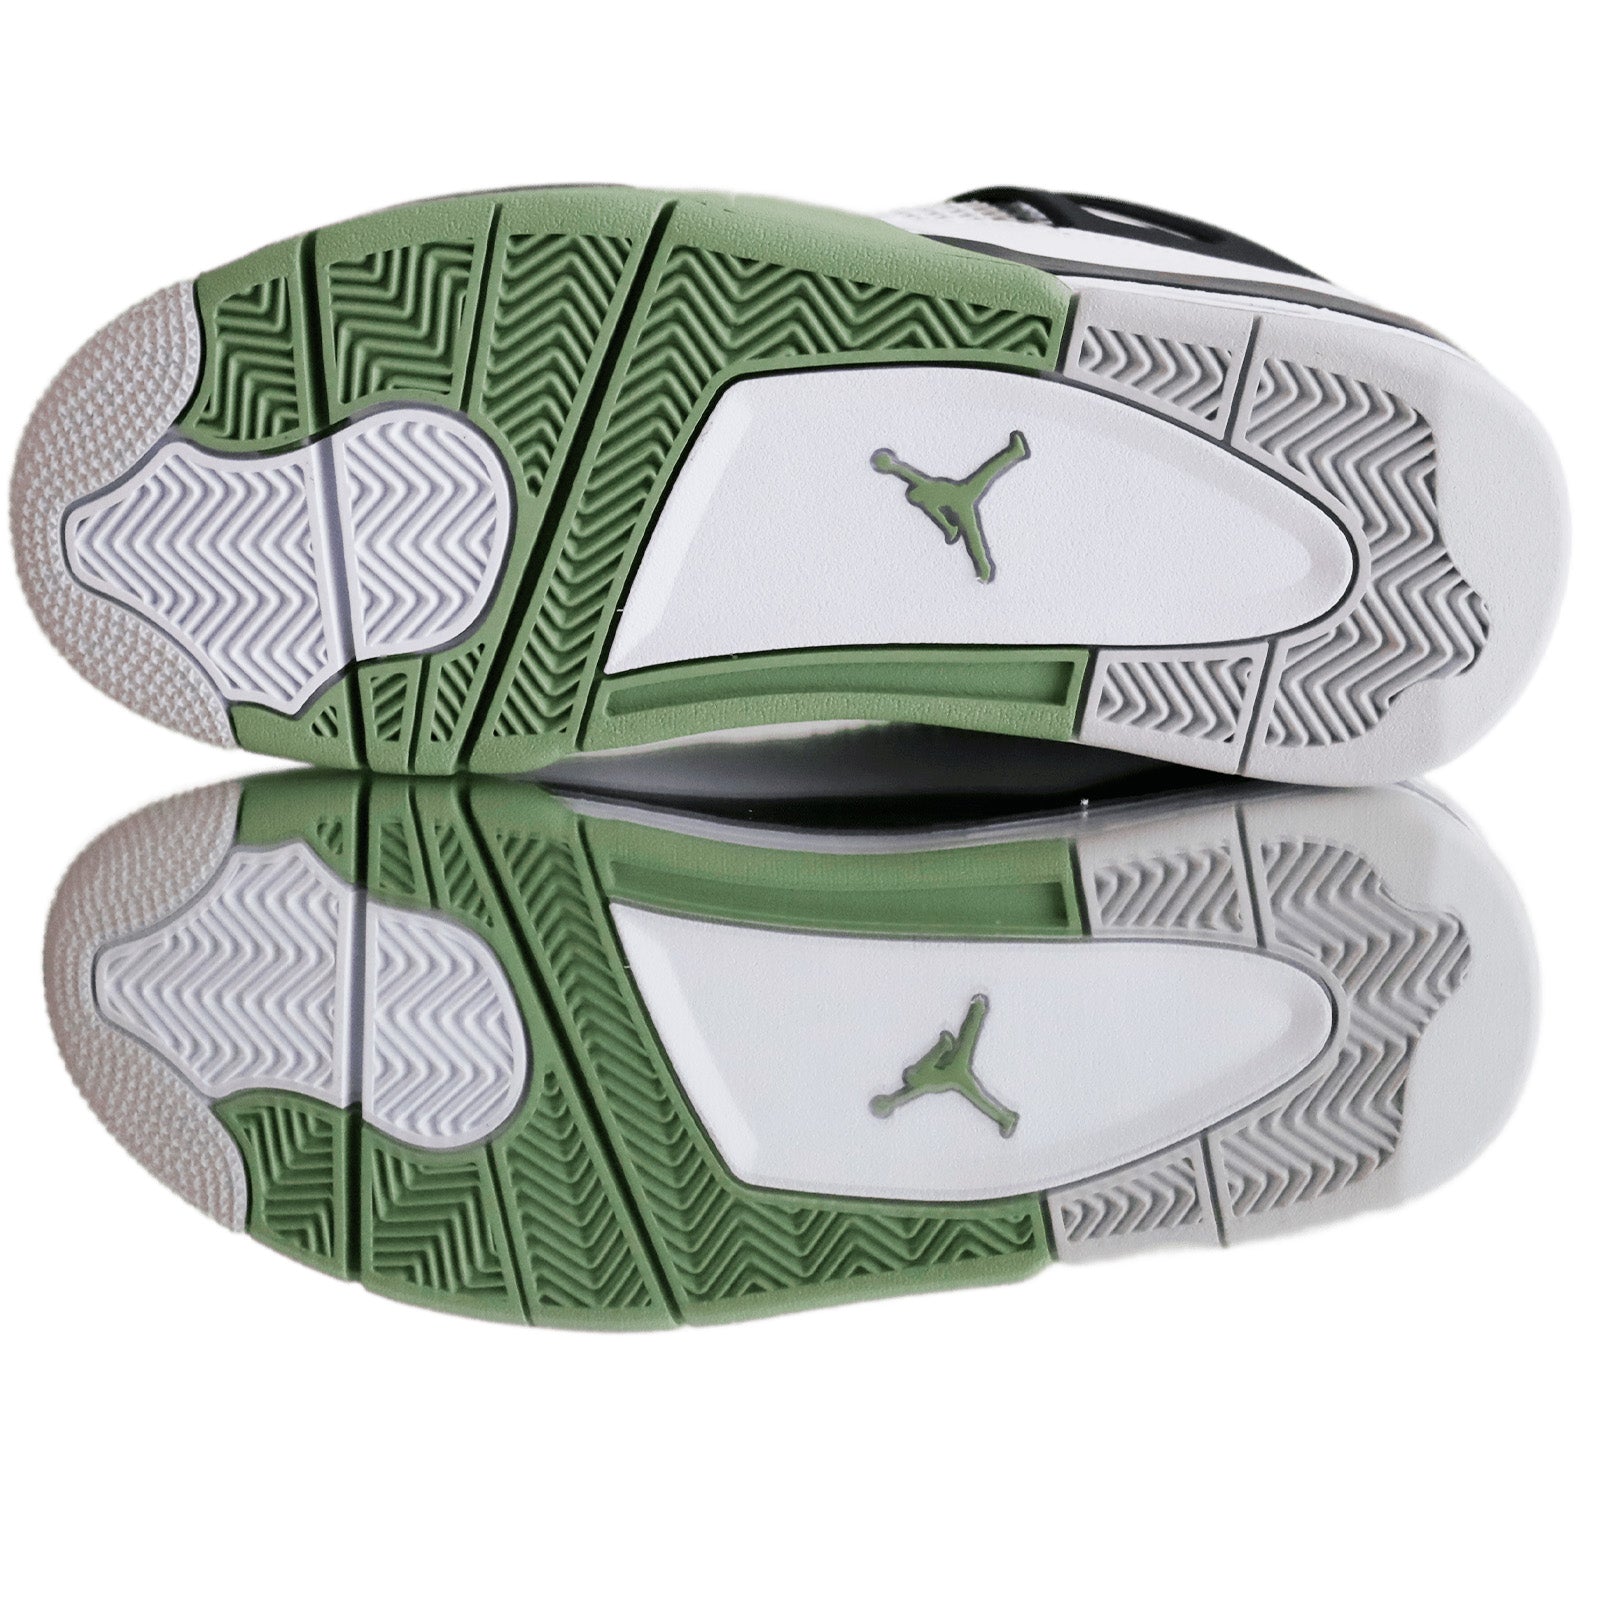 Jordan 4 Retro Seafoam Nike Vaditim   